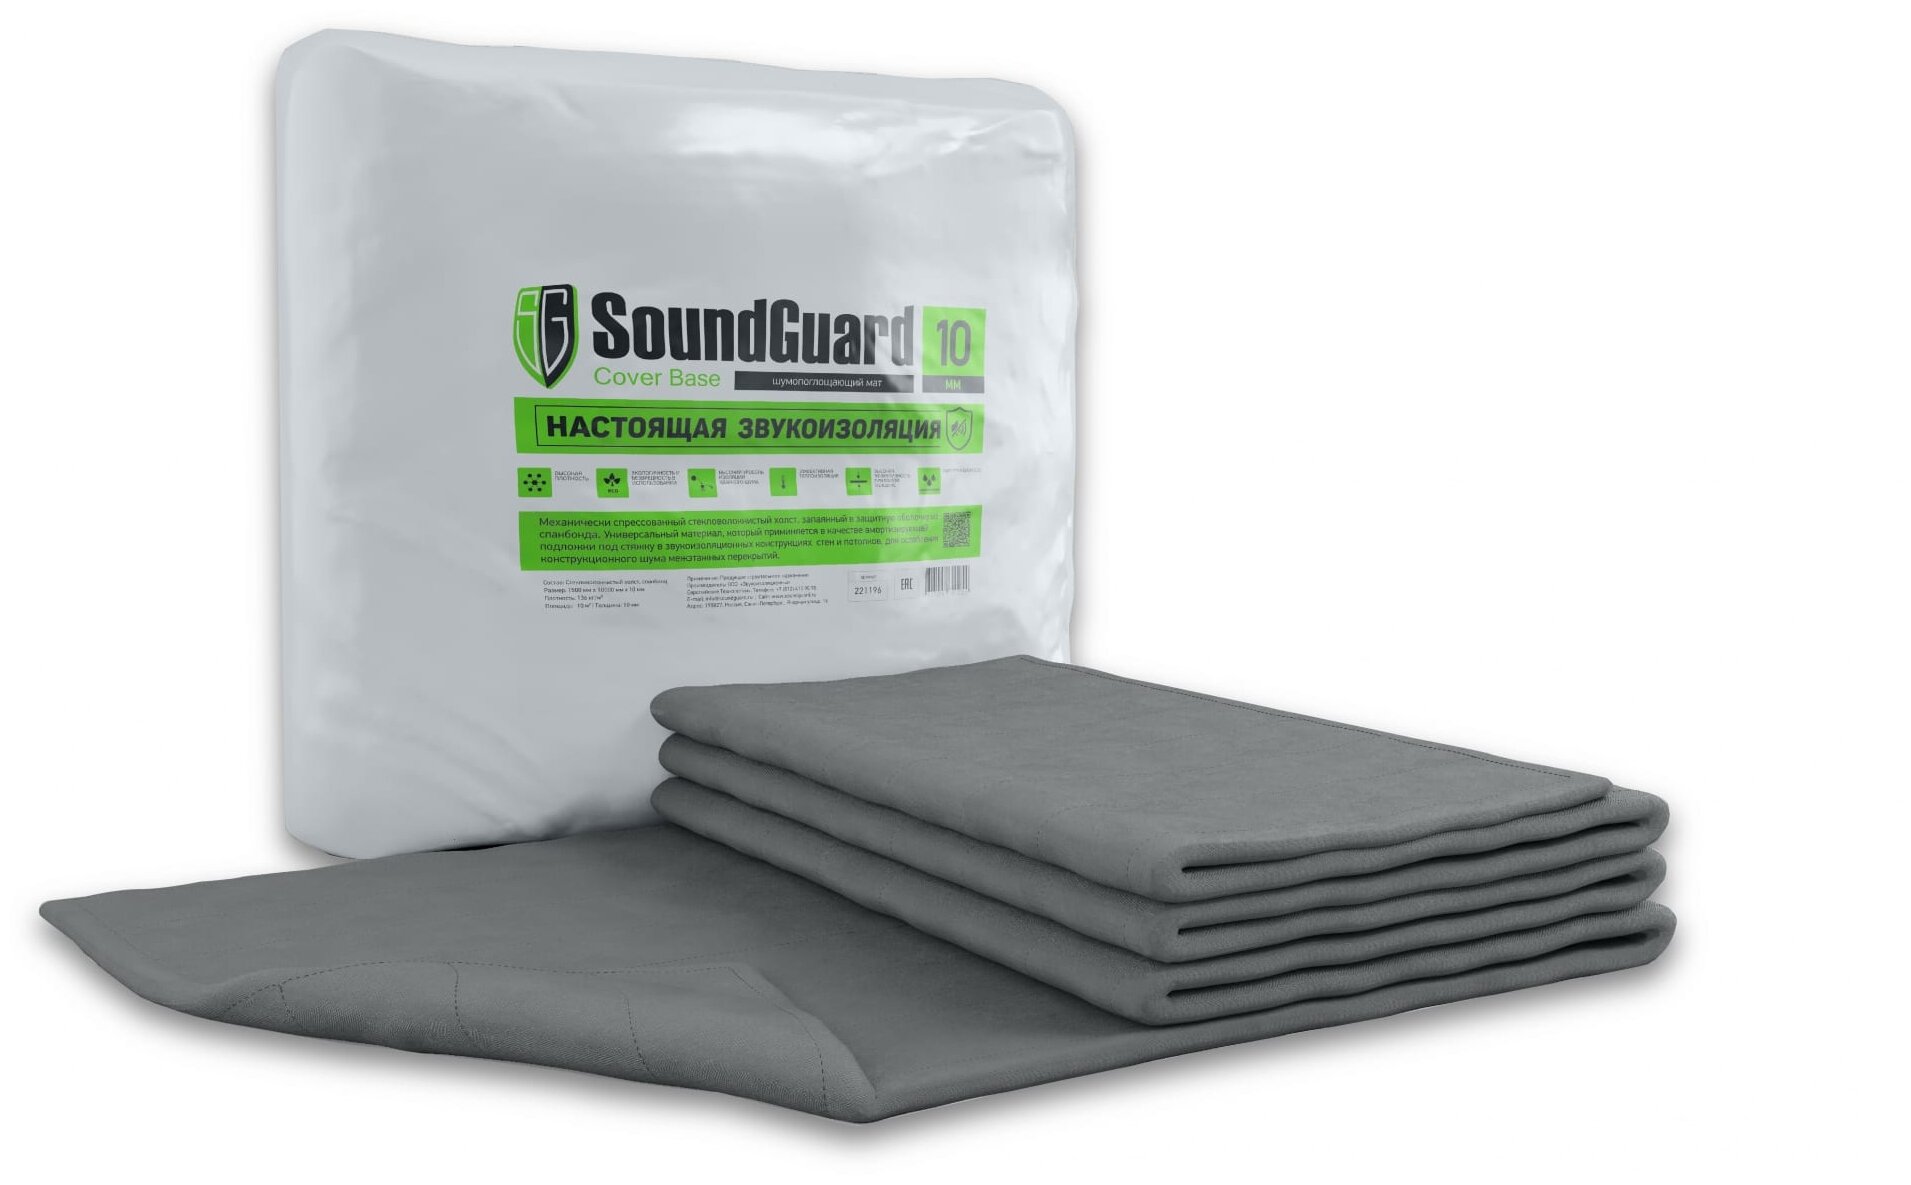 Звукоизоляционный мат SoundGuard Cover Base 5000x1500x10 мм (7,5 м2)